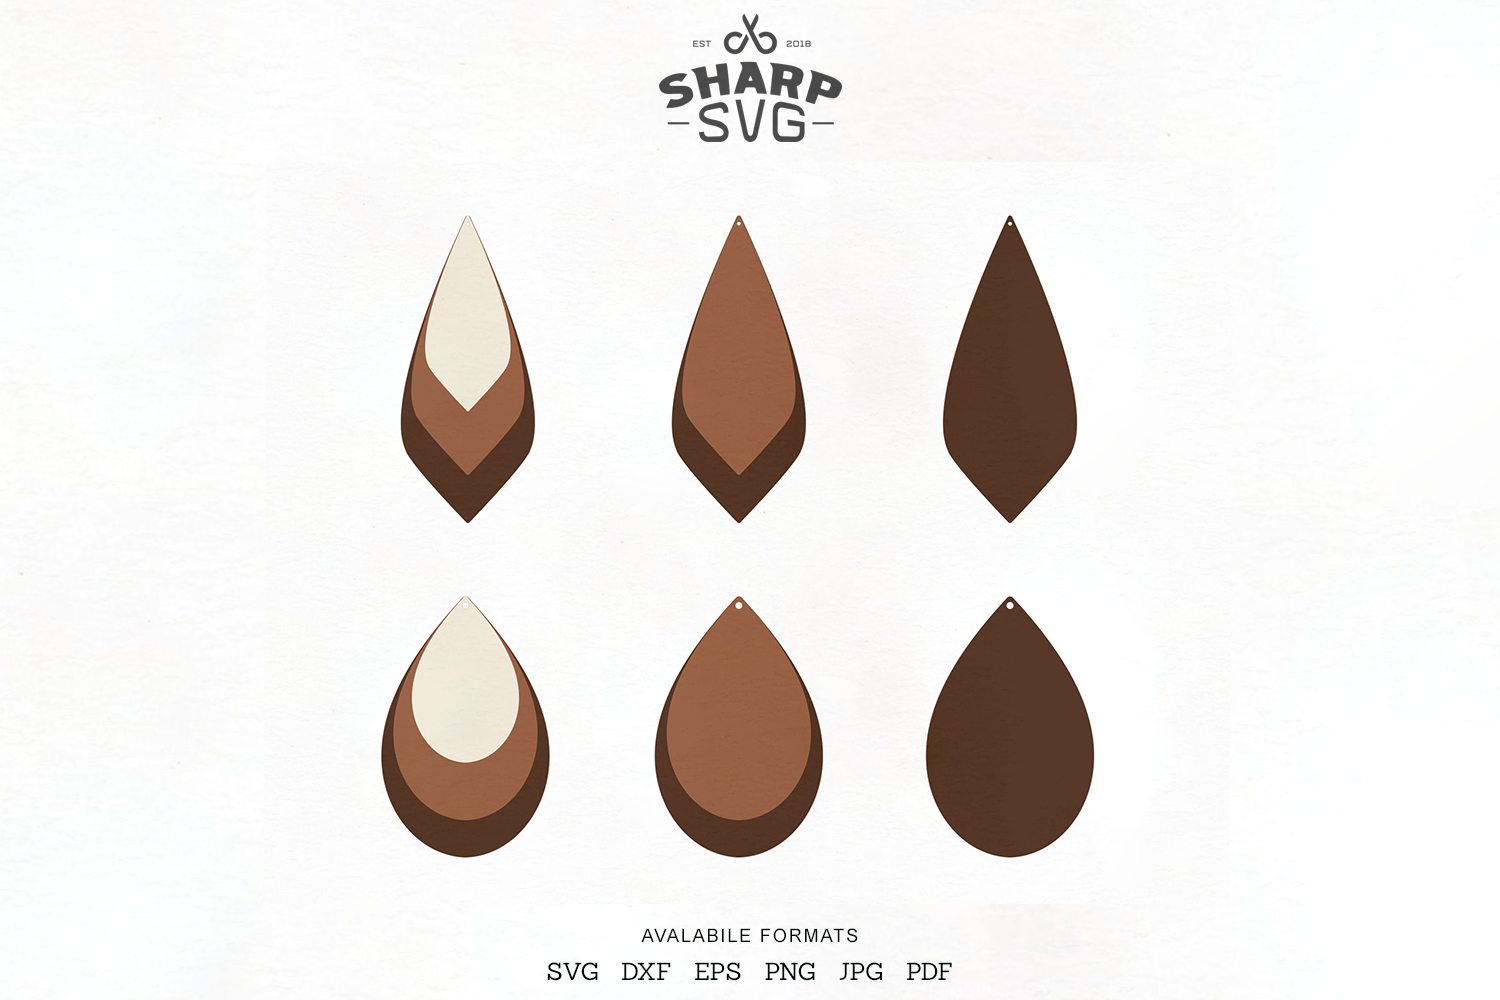 Download Stacked Earrings SVG - Teardrop Leather Earrings Template